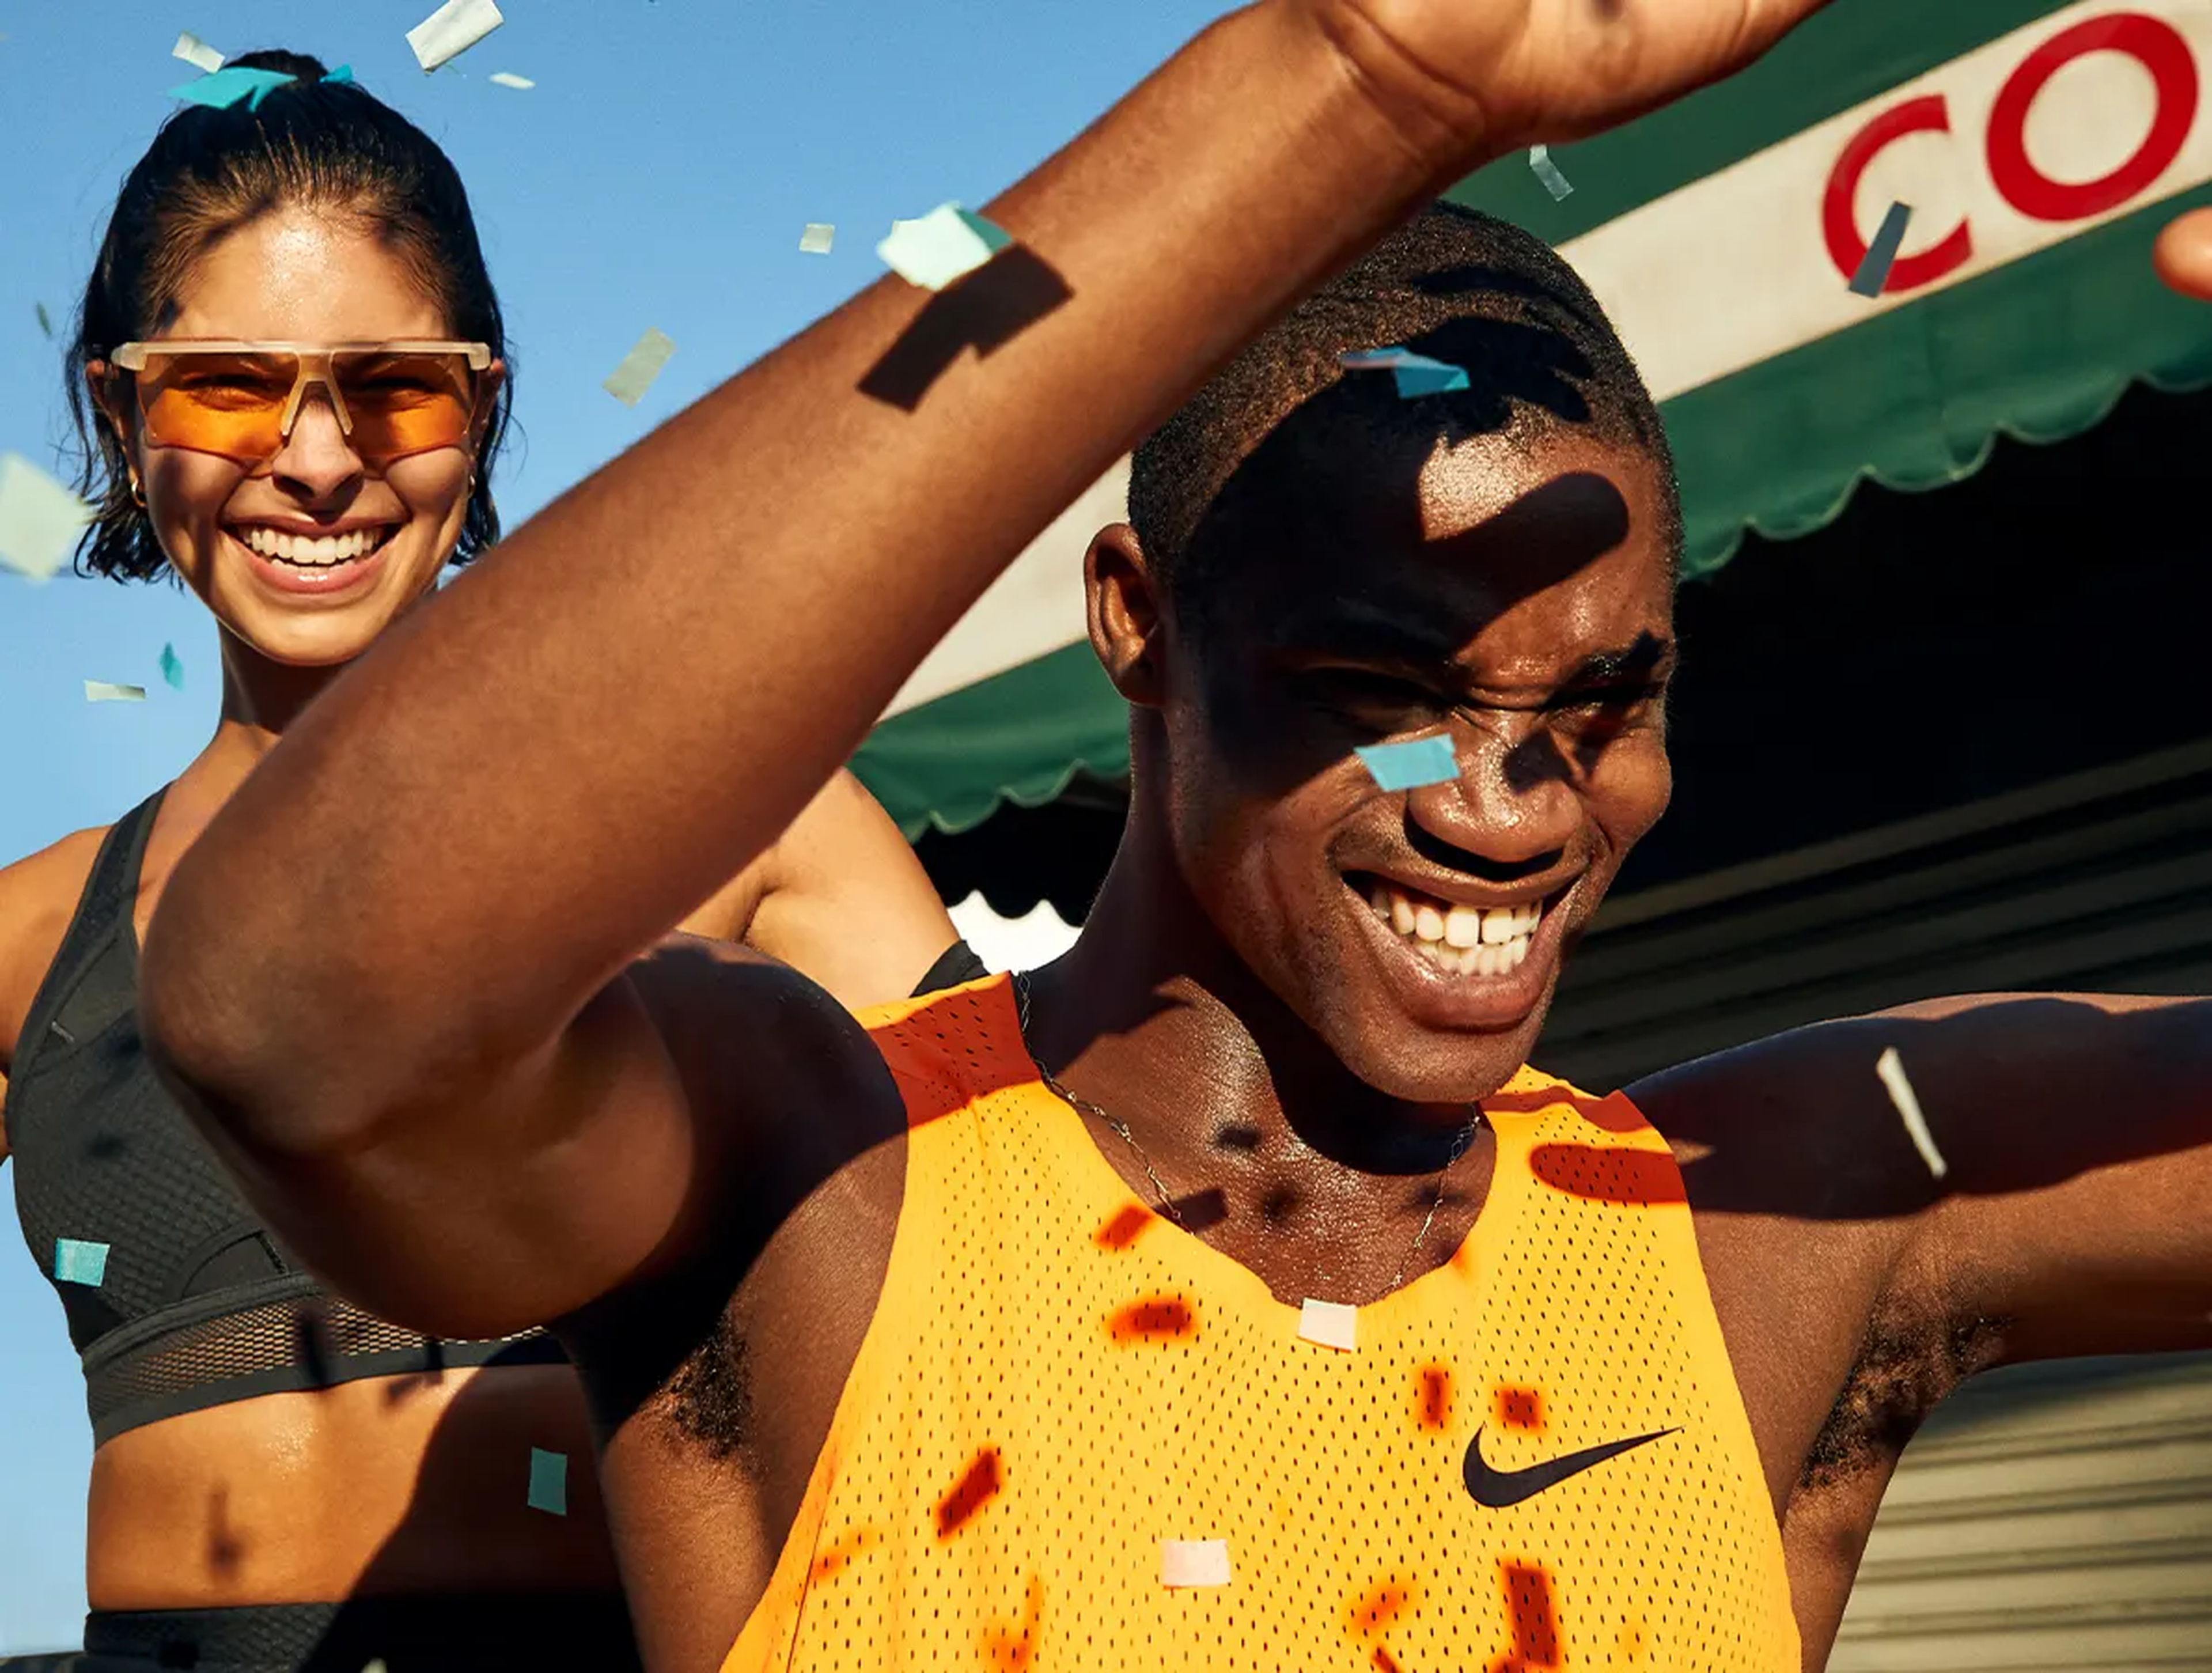 Personas celebrando el final de una carrera con ropa de Nike.